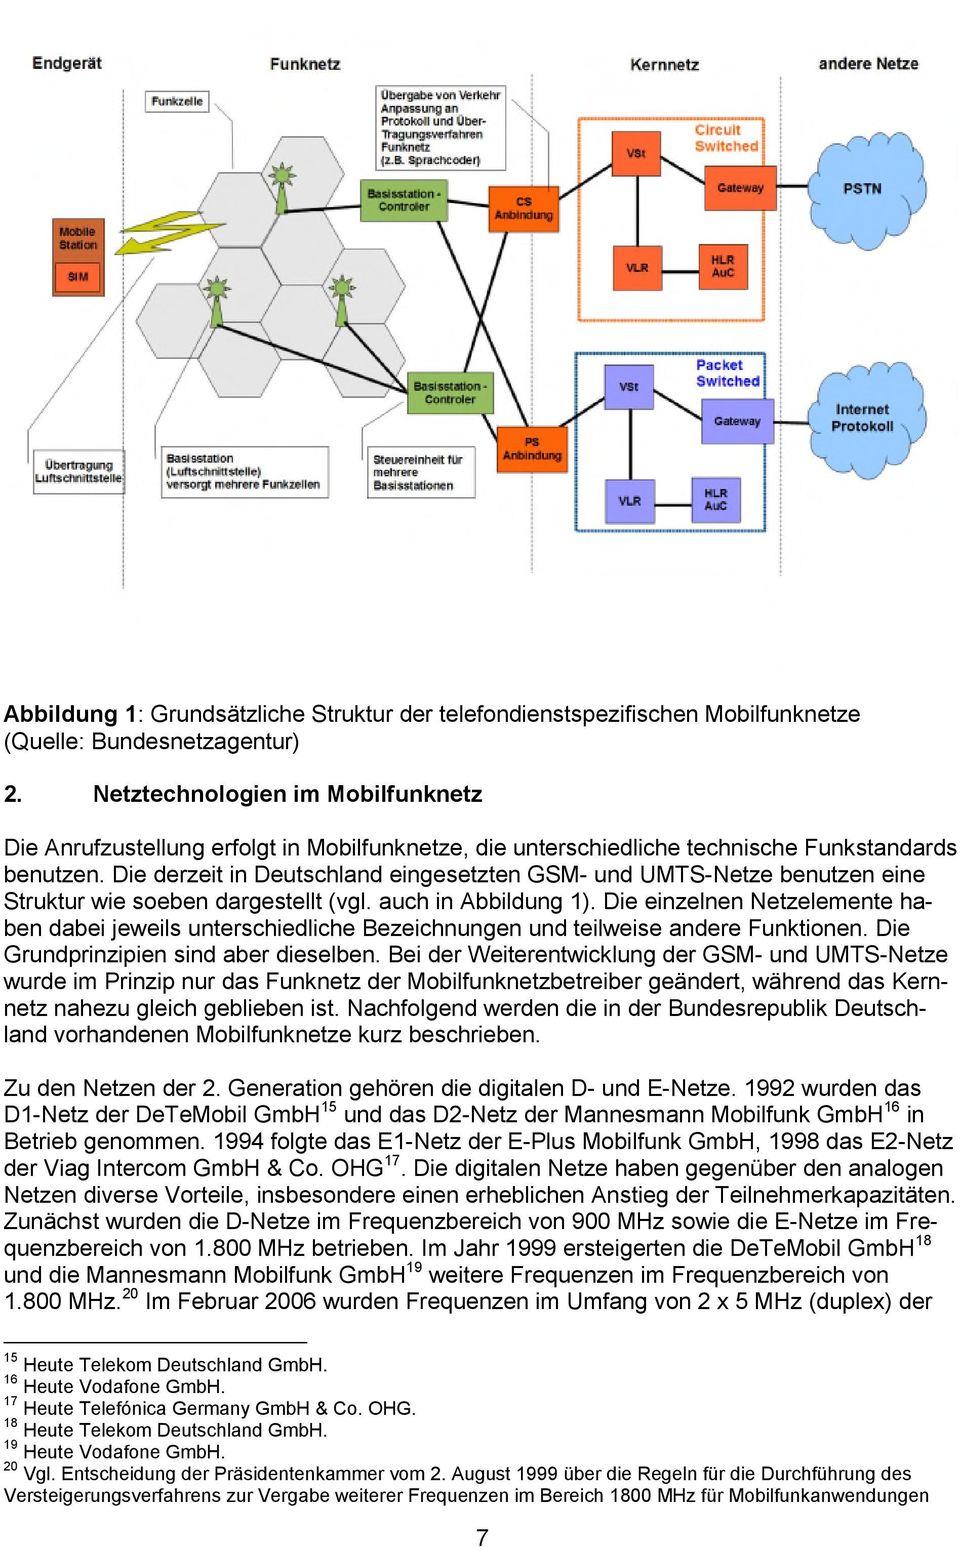 Die derzeit in Deutschland eingesetzten GSM- und UMTS-Netze benutzen eine Struktur wie soeben dargestellt (vgl. auch in Abbildung 1).